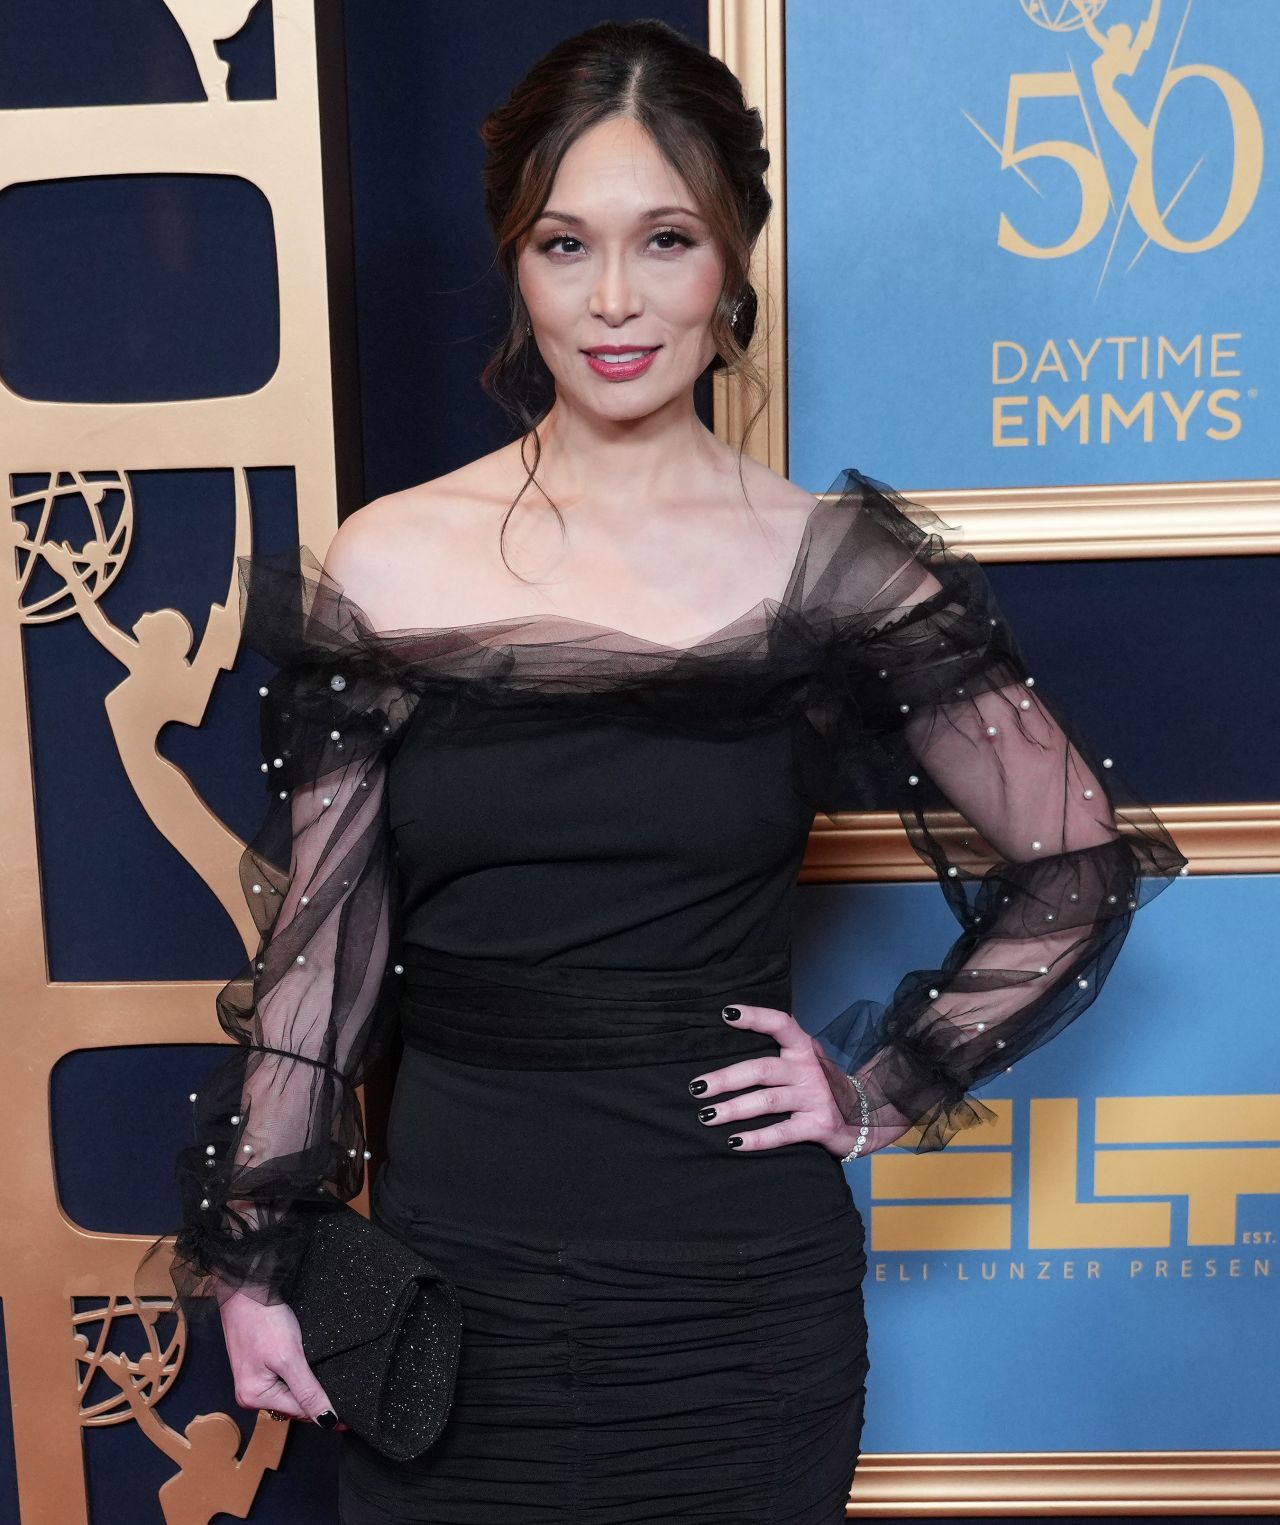 Romy Park in Black Dress at 50th Daytime Emmy Awards in LA 4